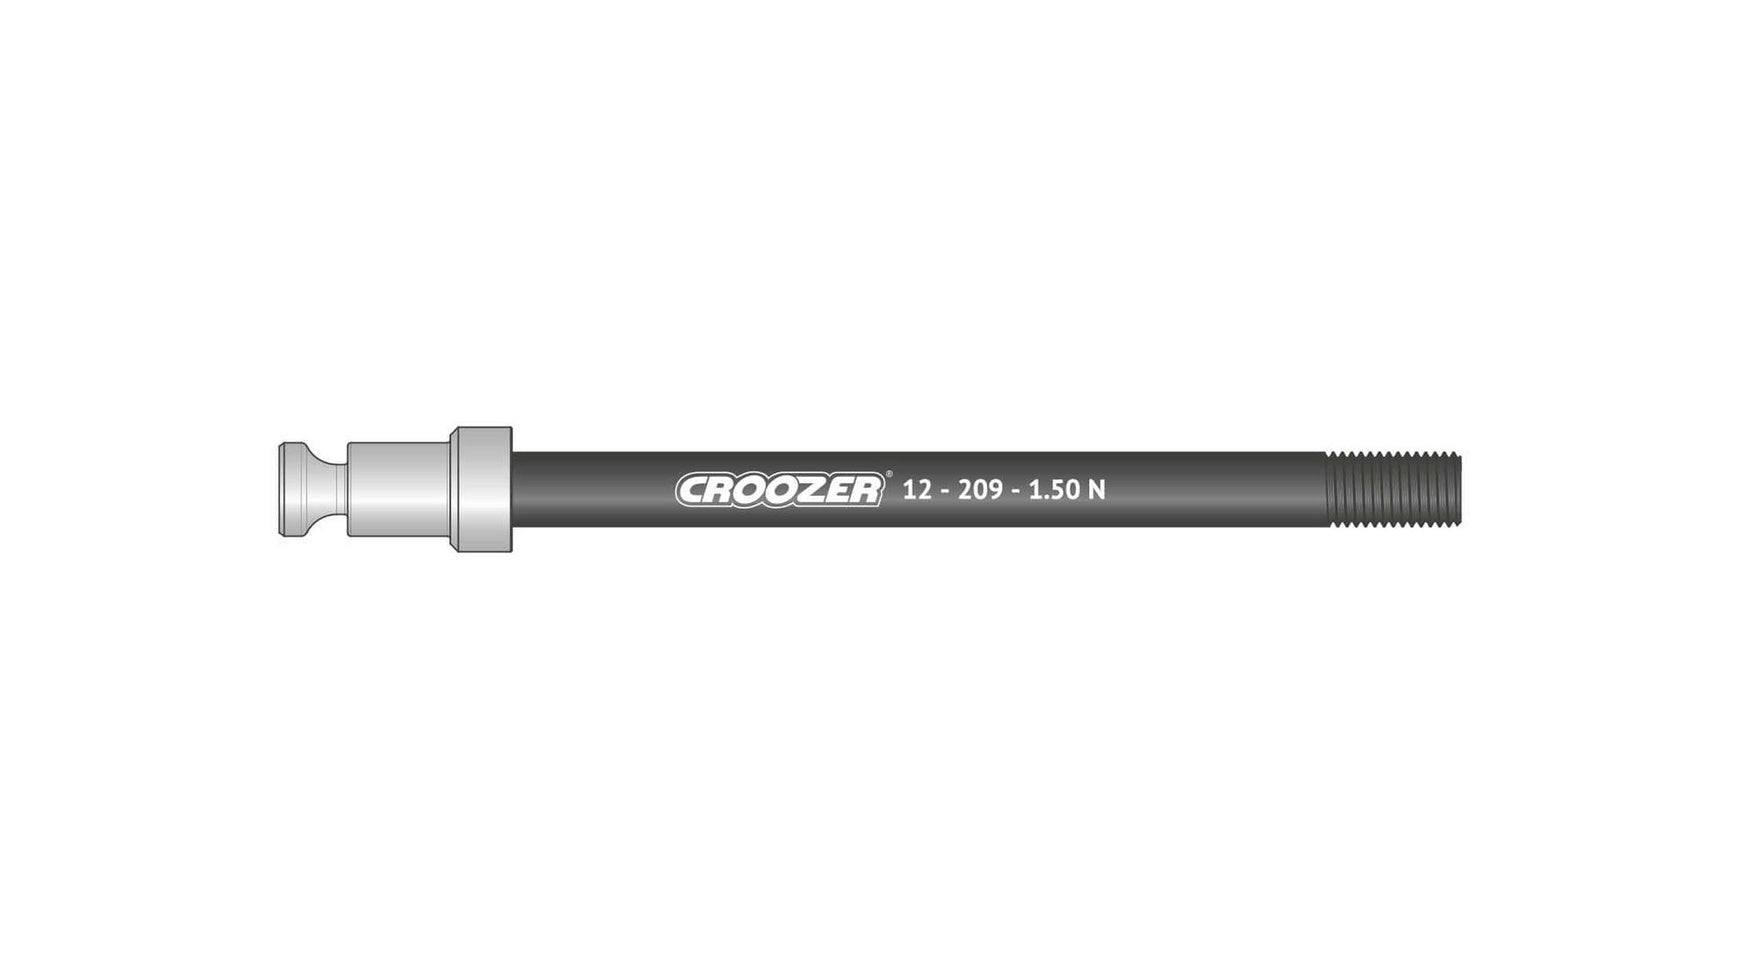 Croozer 12-209-1.50 N von CROOZER